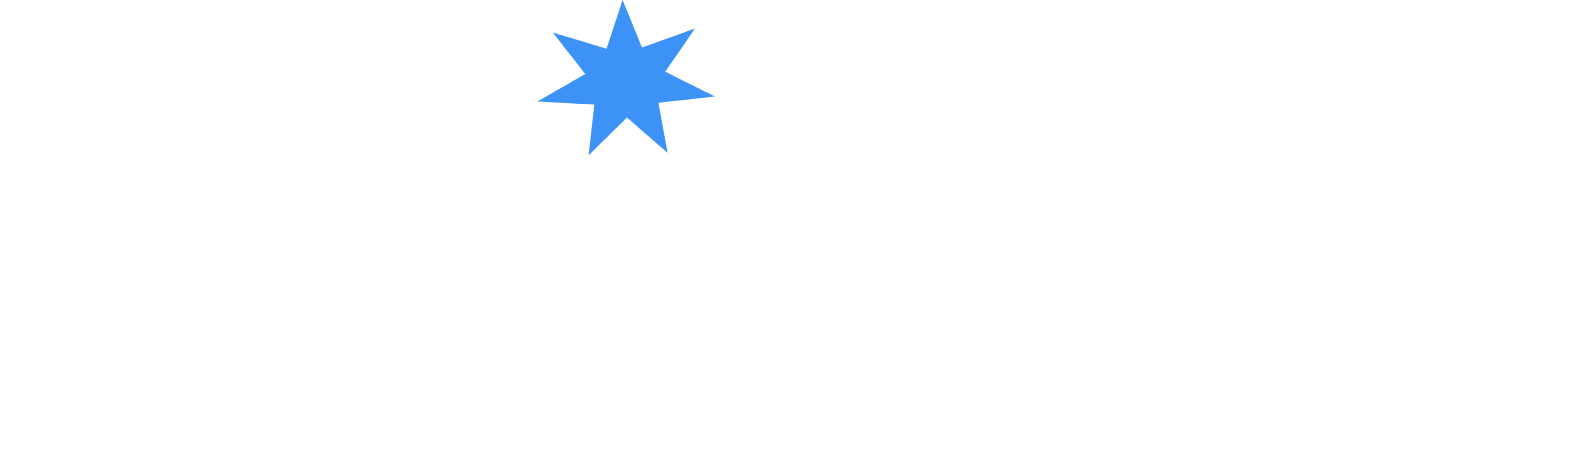 Azimut Holding logo large for dark backgrounds (transparent PNG)